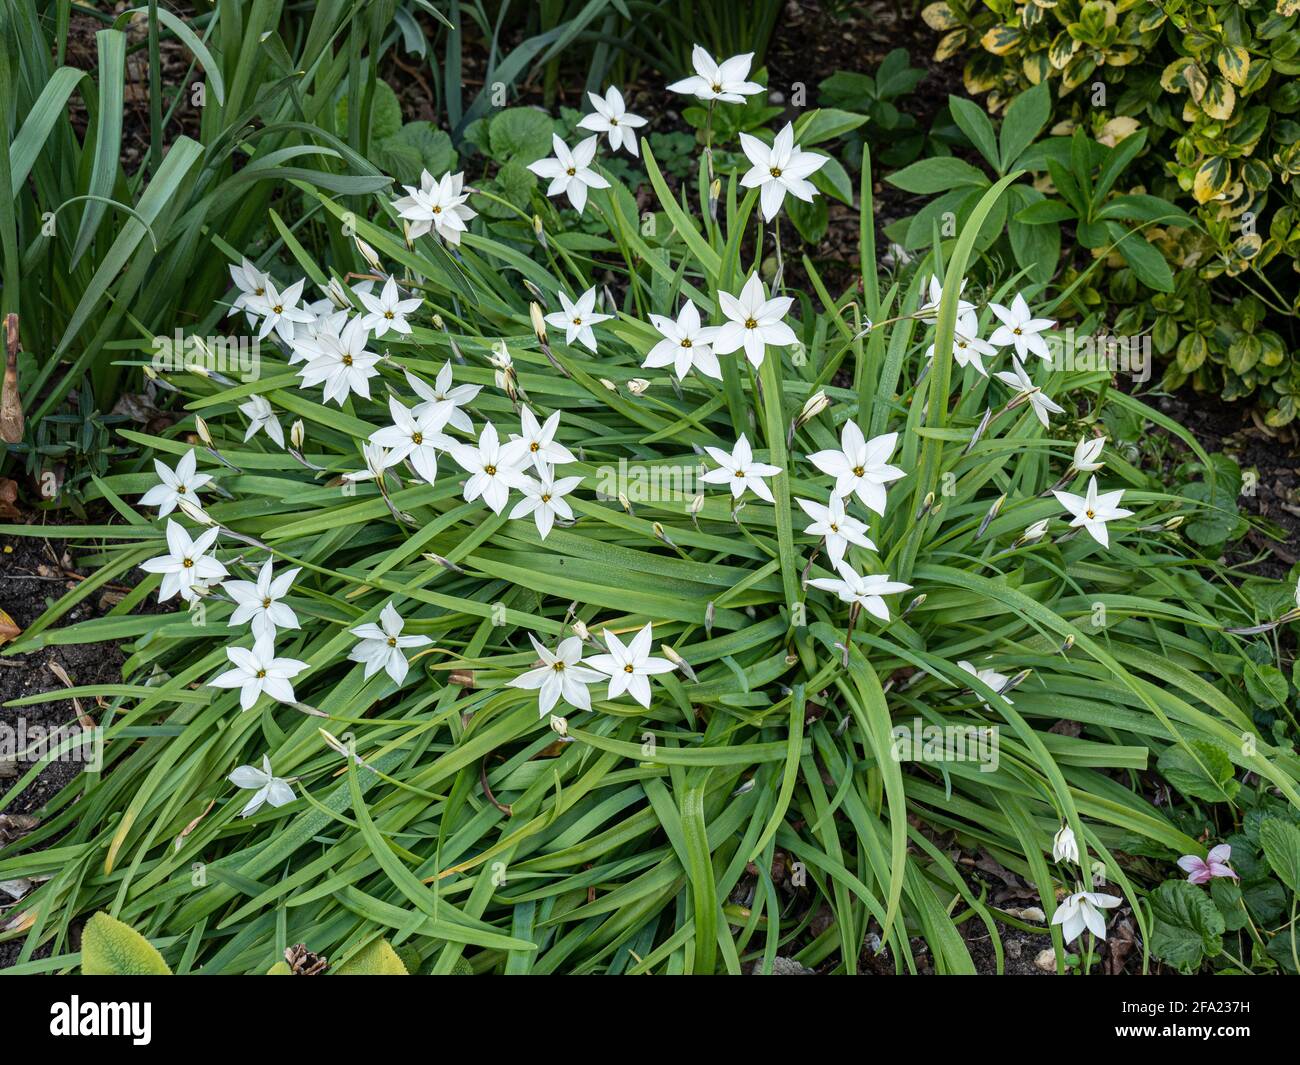 Un grumo del bulbo della molla Ipheion Alberto Castillo mostrando i fiori cremosi di stelle bianche Foto Stock